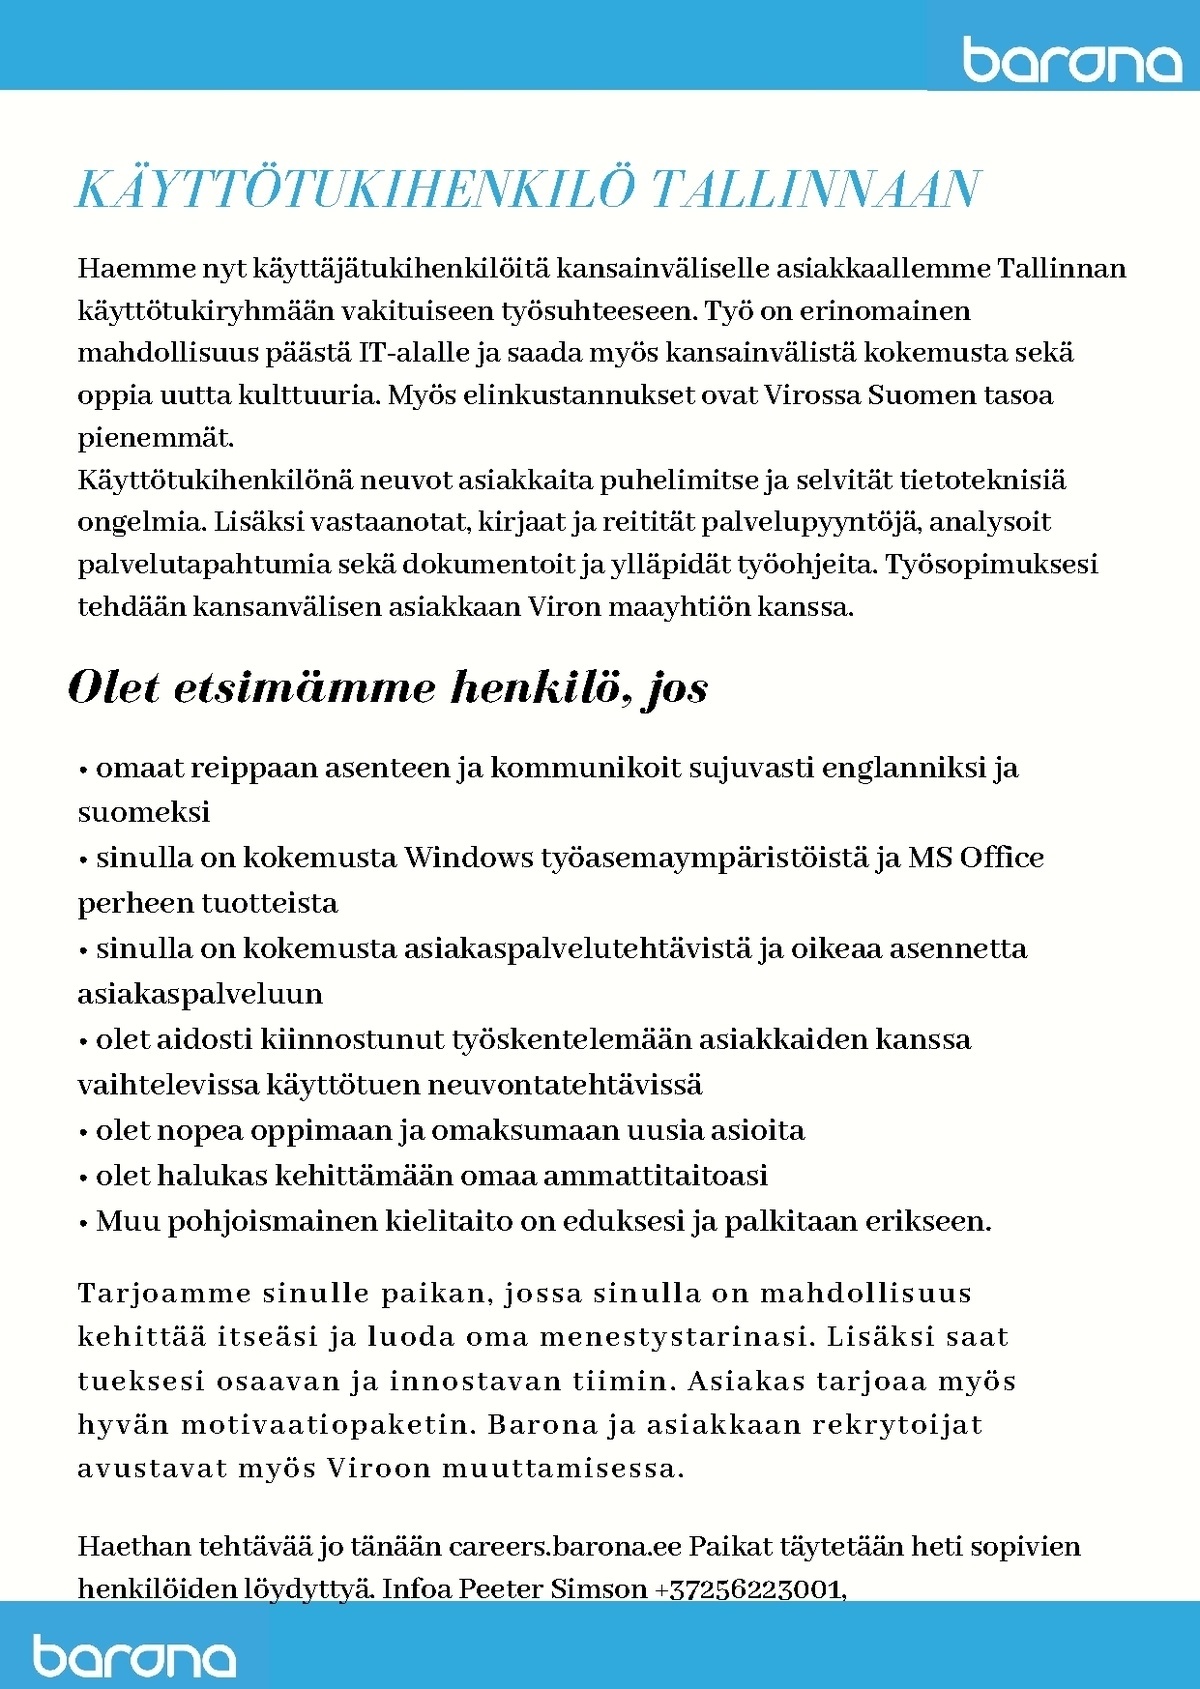 Barona Eesti OÜ KÄYTTÖTUKIHENKILÖ Tallinnaan